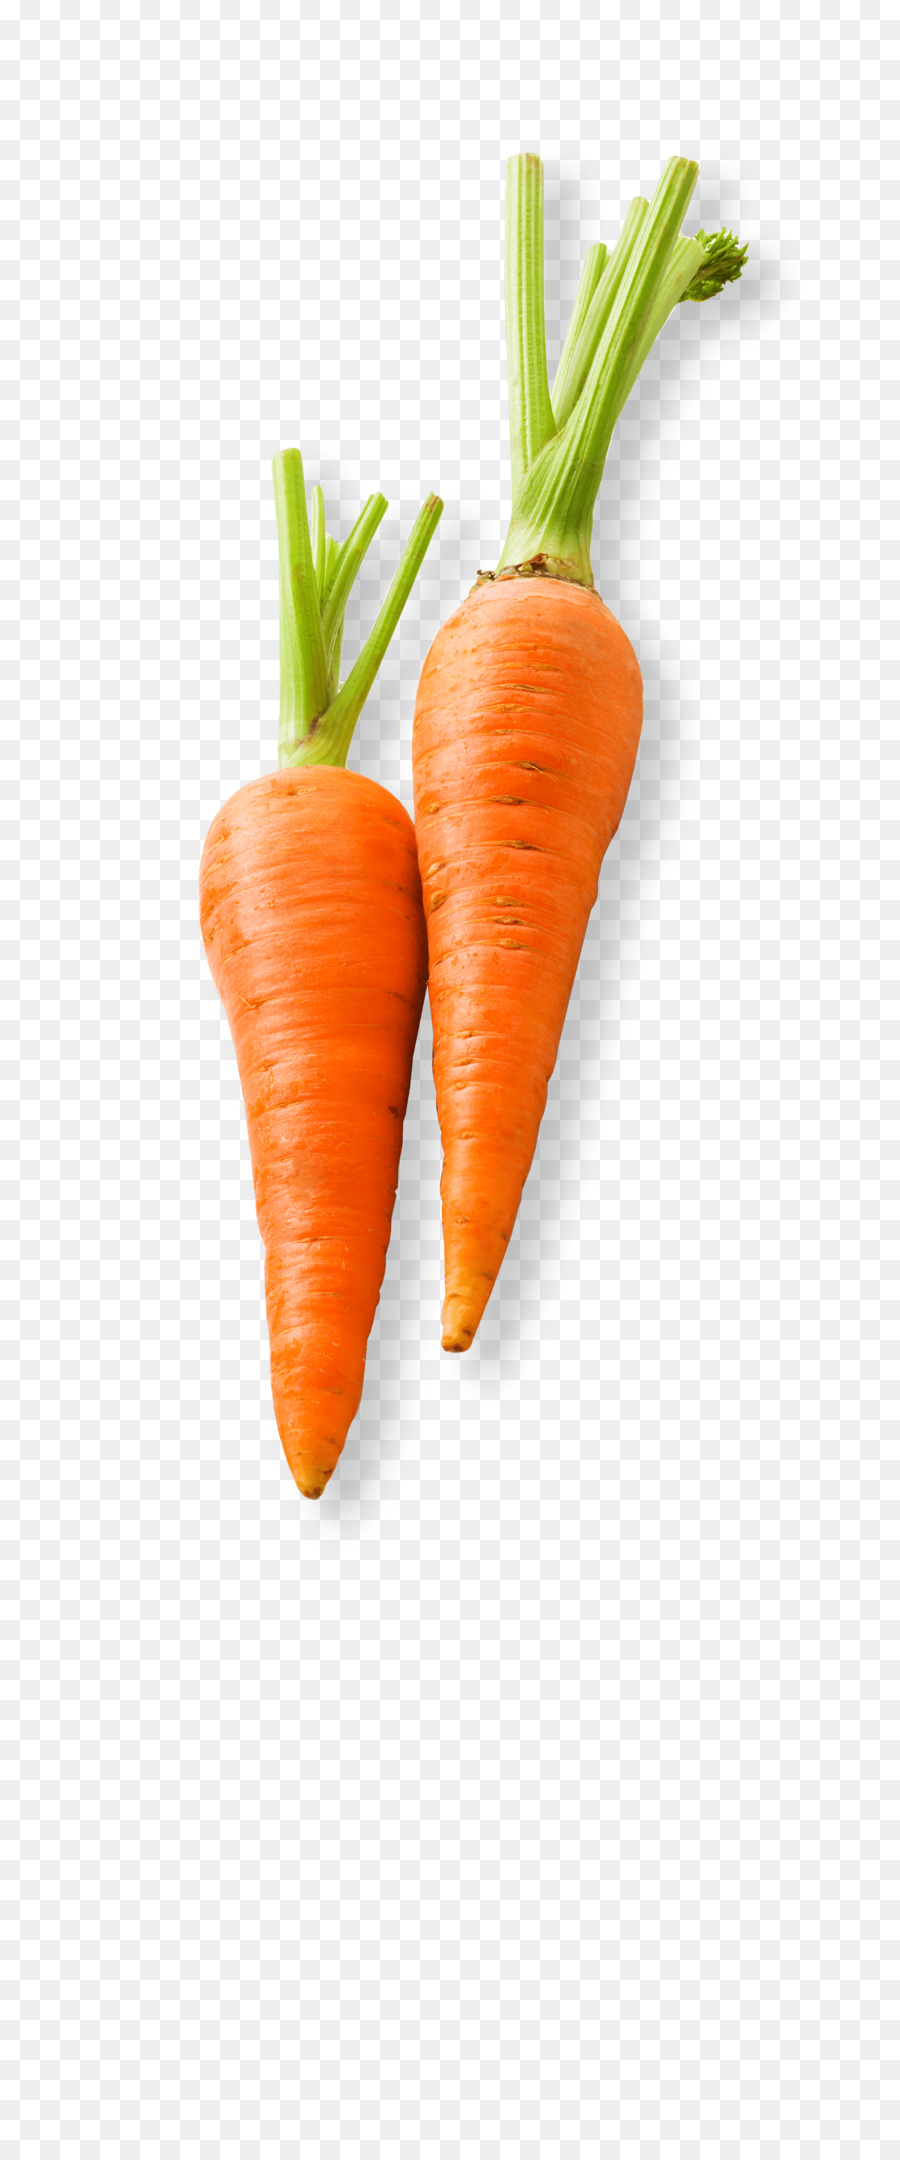 Baby carrot Vegetable Food Carrot cake - carrot png download - 2400*5721 - Free Transparent Carrot png Download.